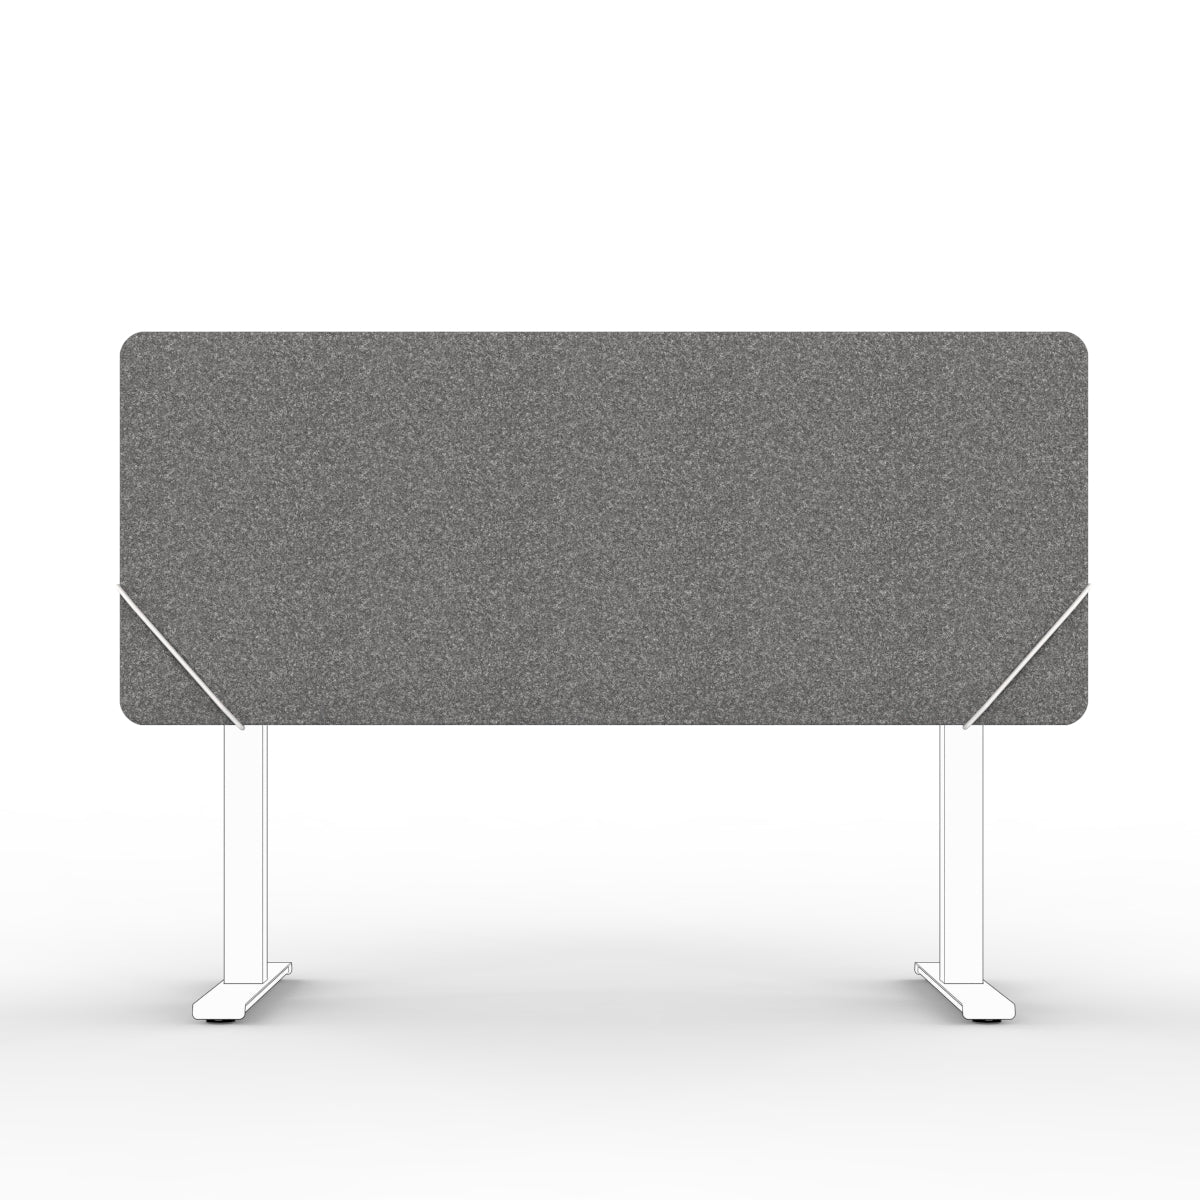 Sound absorbing table divider in dark grey with white slide on table mounts. Bordskjerm for skrivebord. Avskjerming og lyddemping på kontor